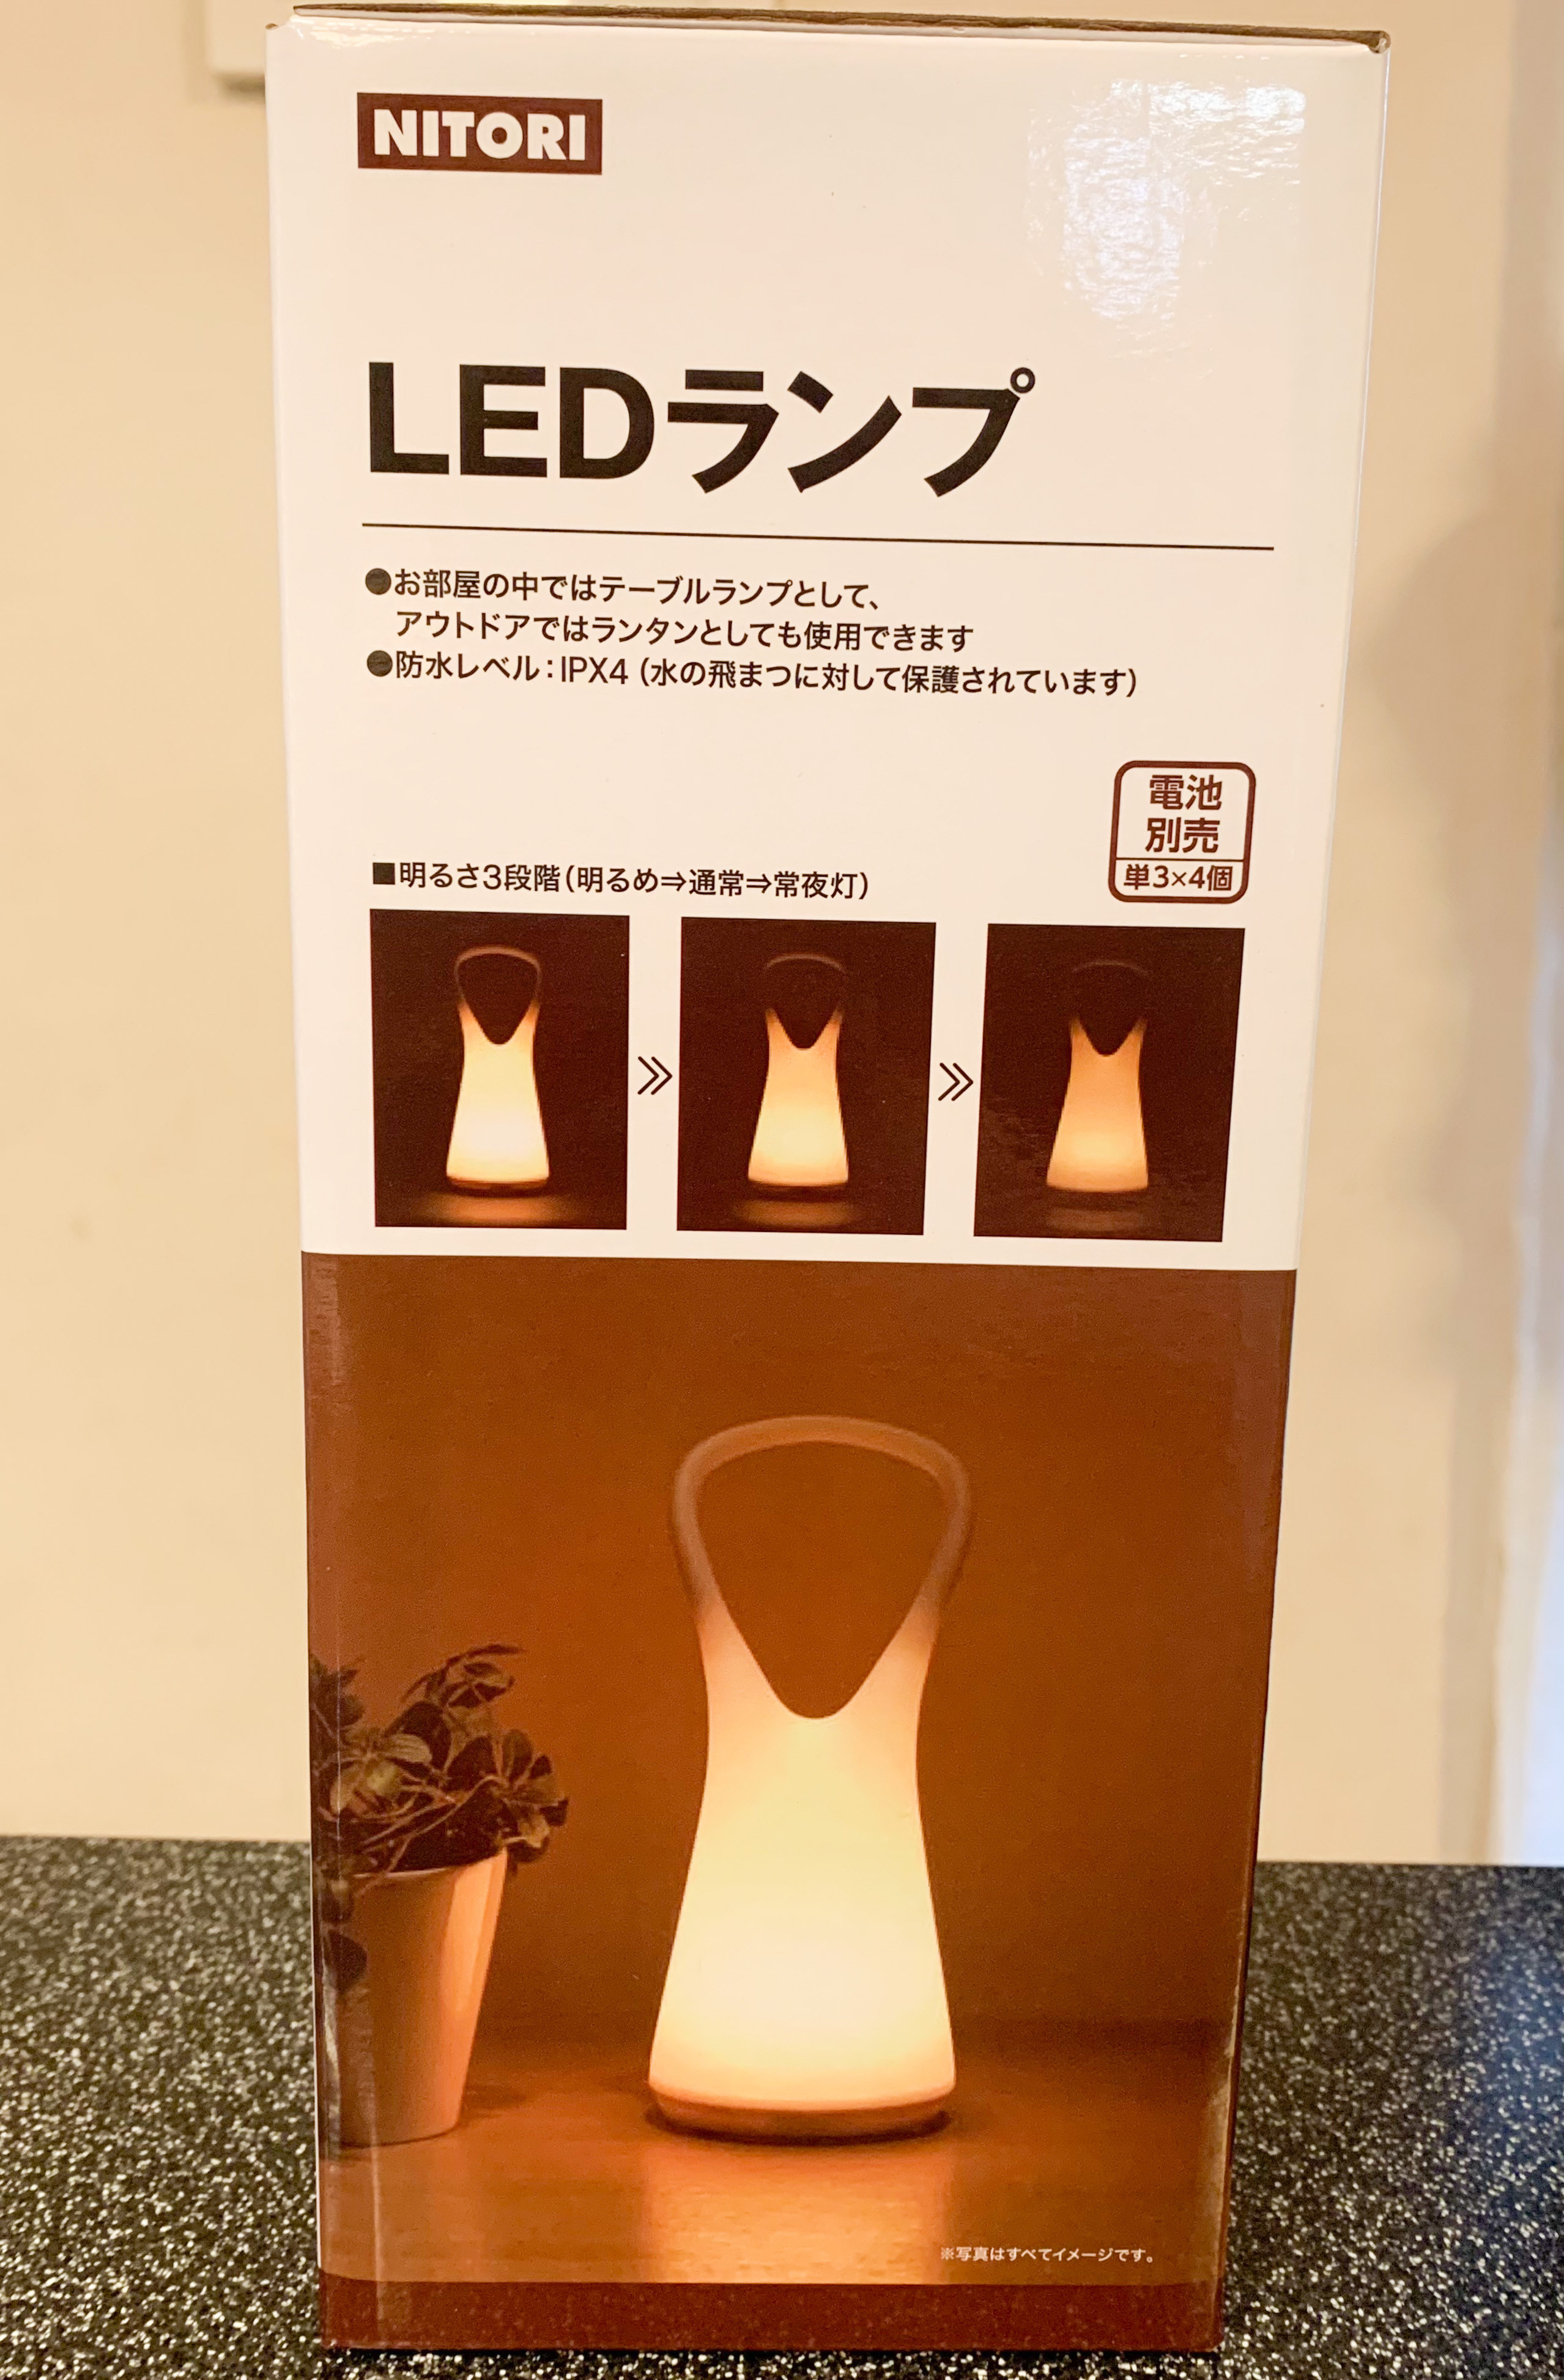 今まで買ってよかったもの1位かも…！ニトリの「便利ランプ」がお洒落なのに実用的で凄すぎた…。